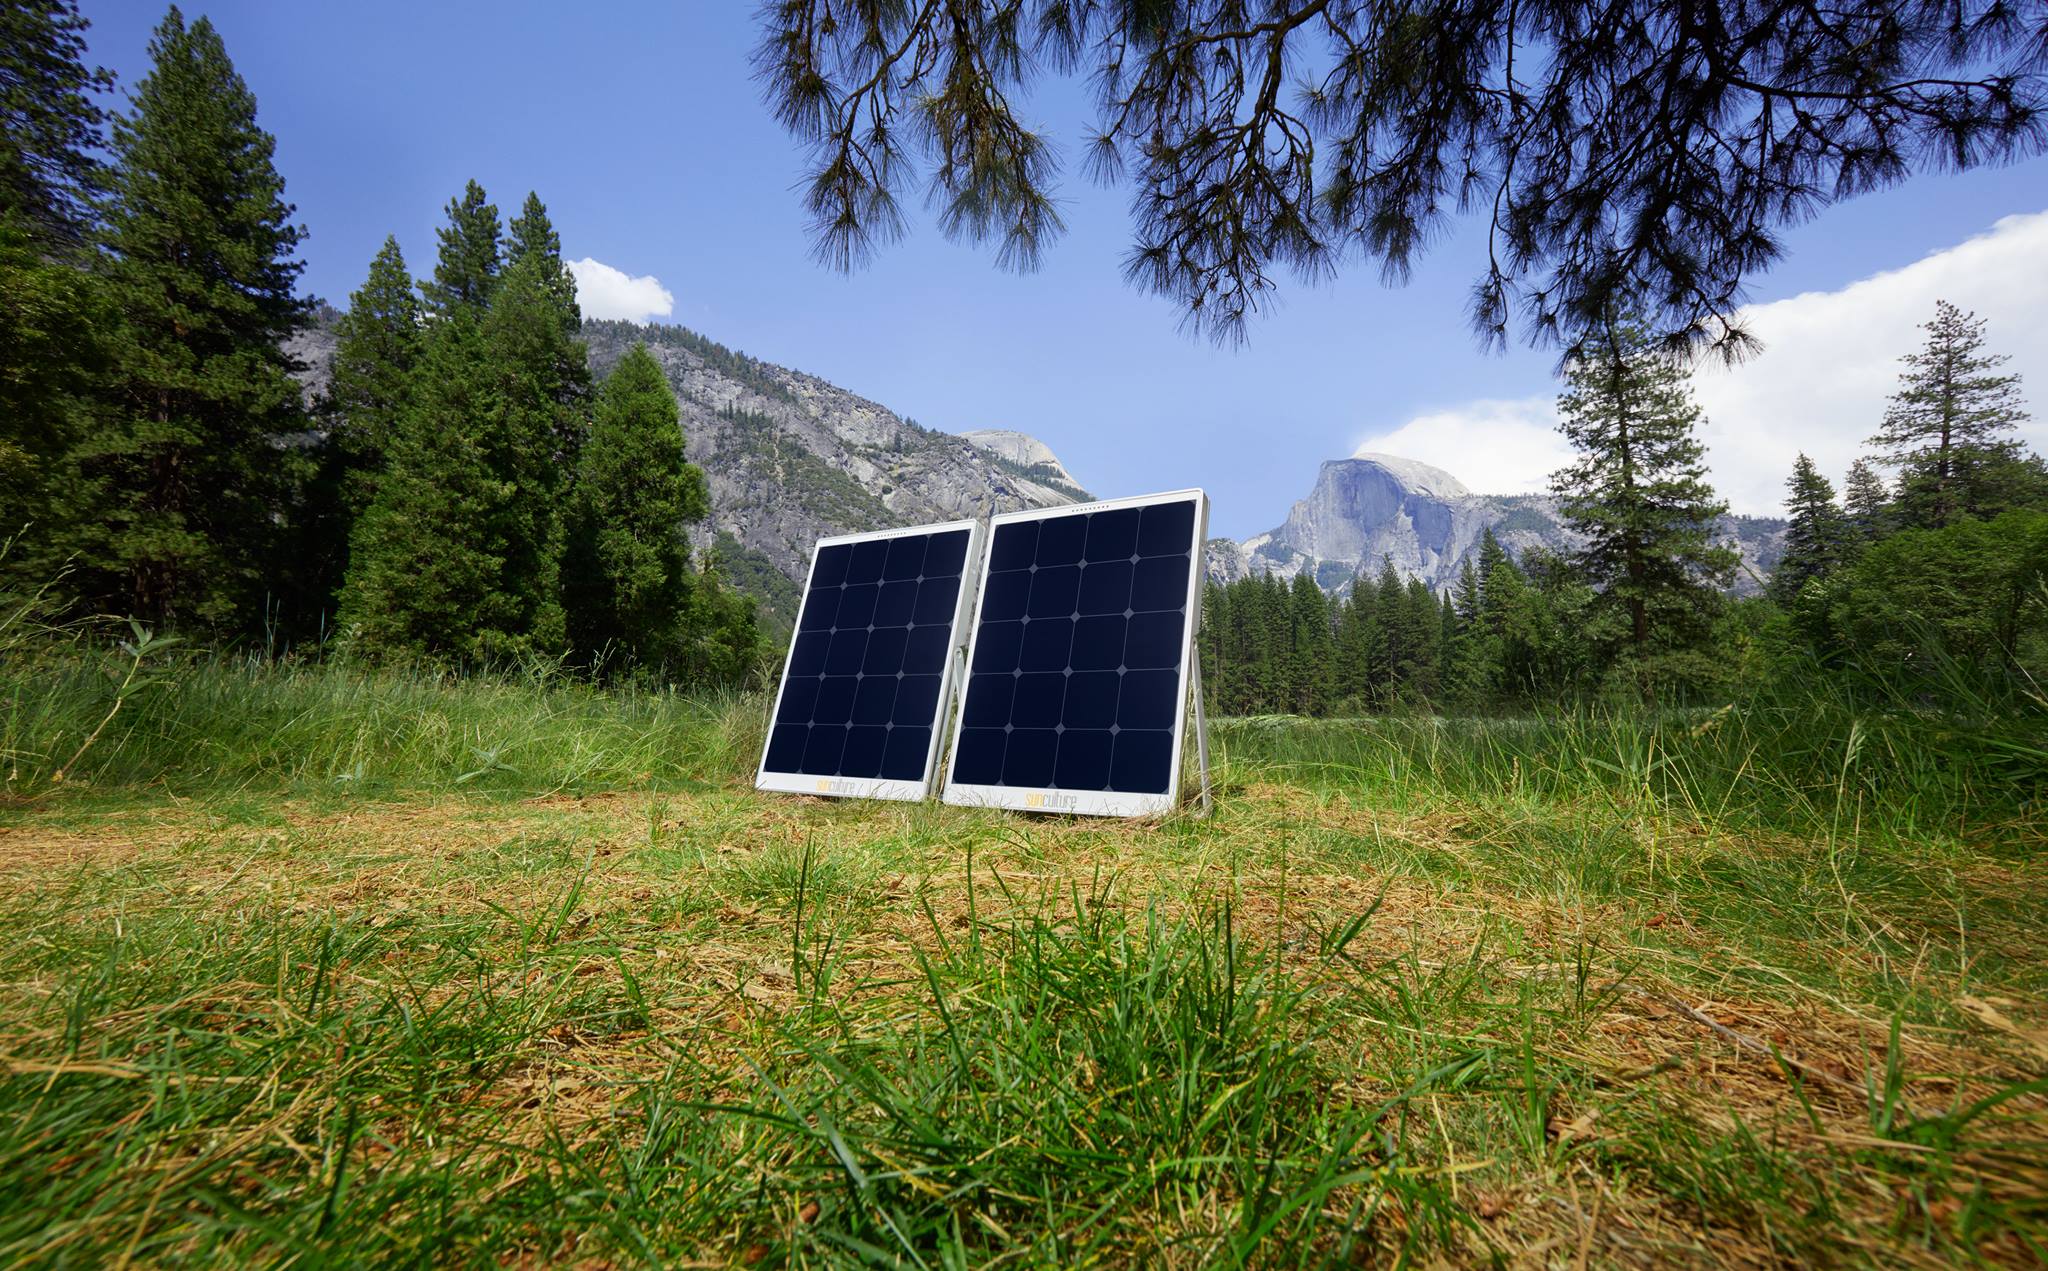 GaN Systems’ Transistors Enable SolPad’s Revolutionary Solar Power Inverter